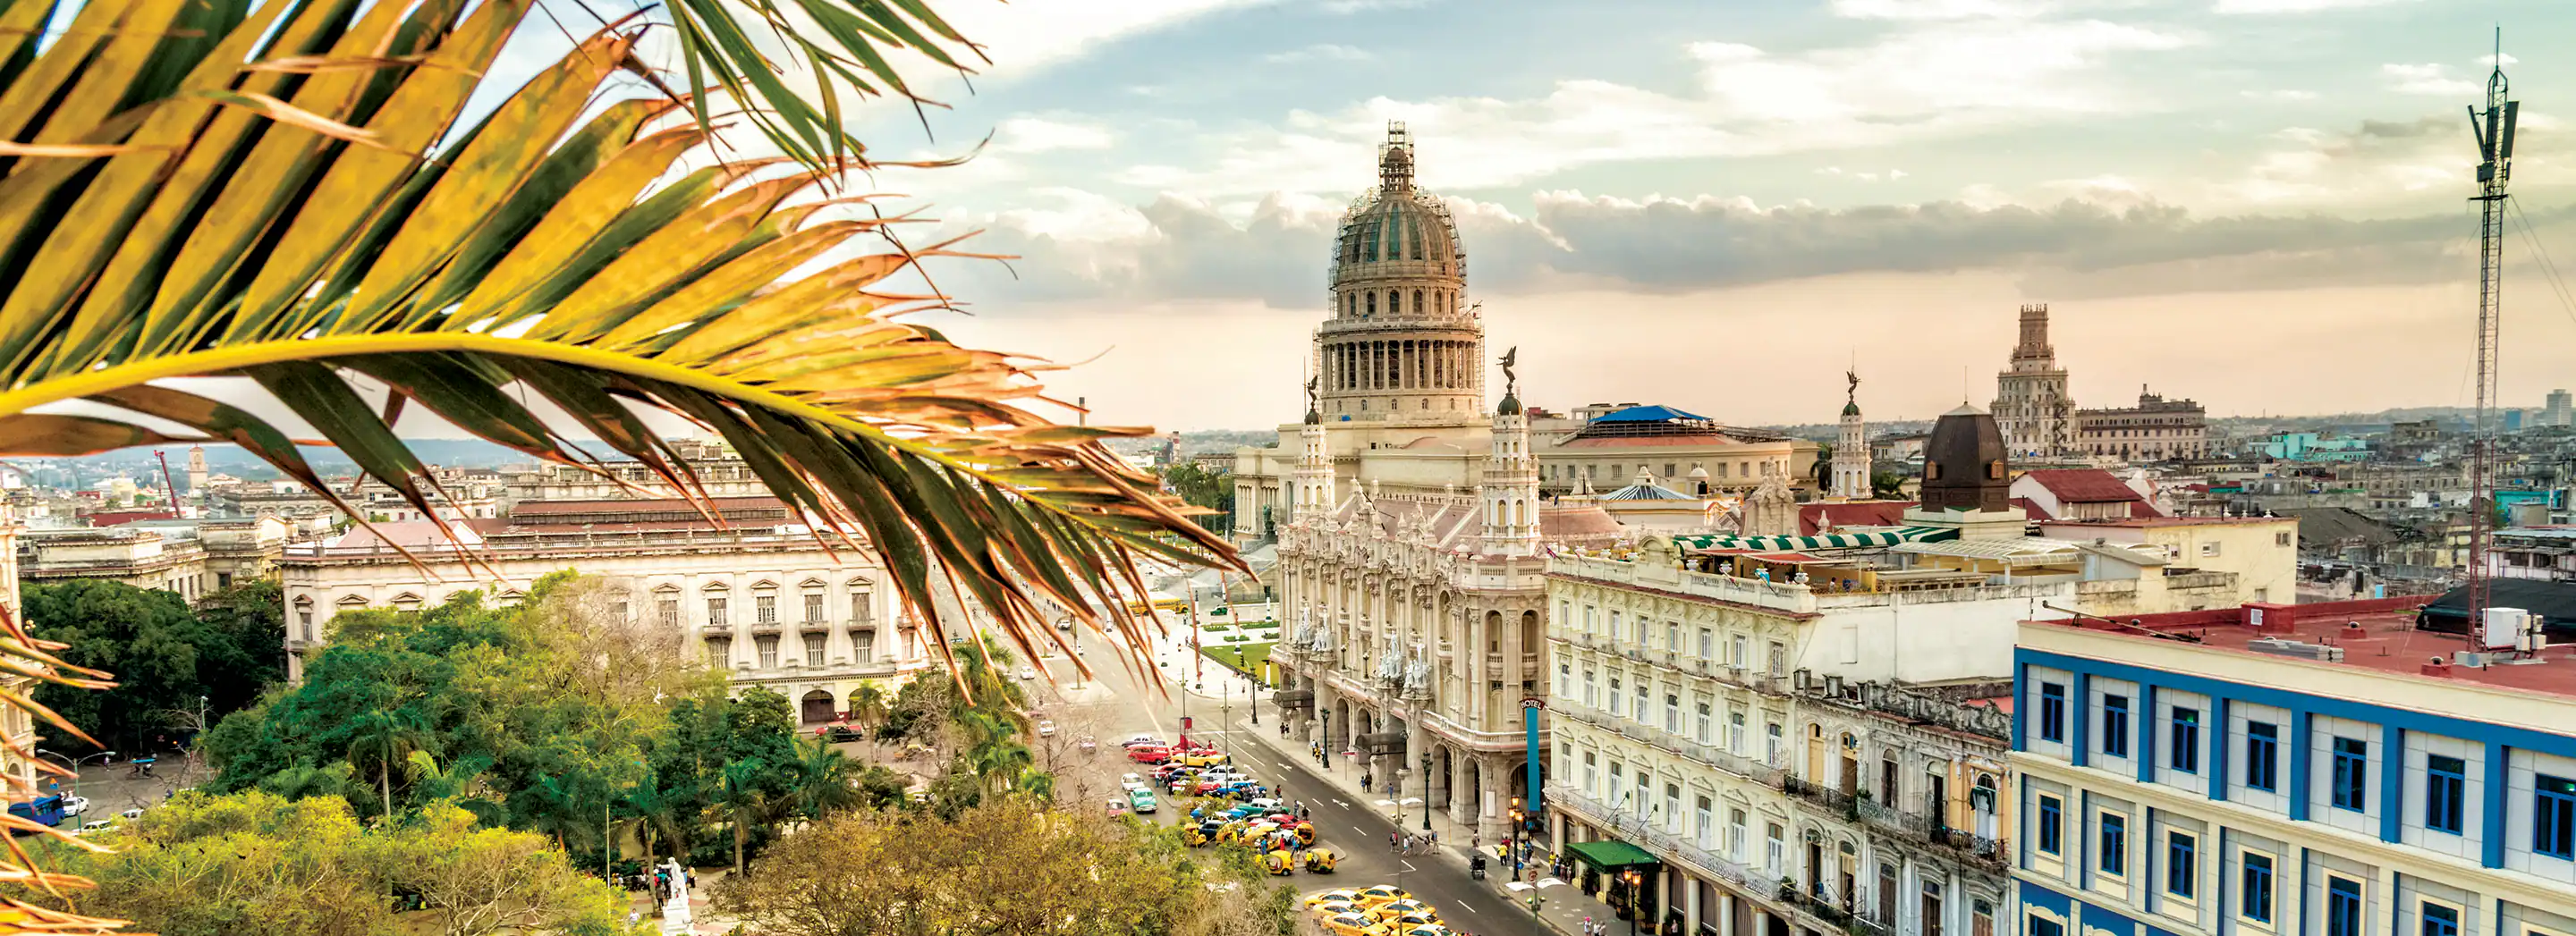 ¡CUBA: La Habana + Varadero! Hoteles 4* con Desayuno y TODO INCLUIDO. ¡Incluye Vuelos + Traslados + Seguro de viaje + Excursiones opcionales!